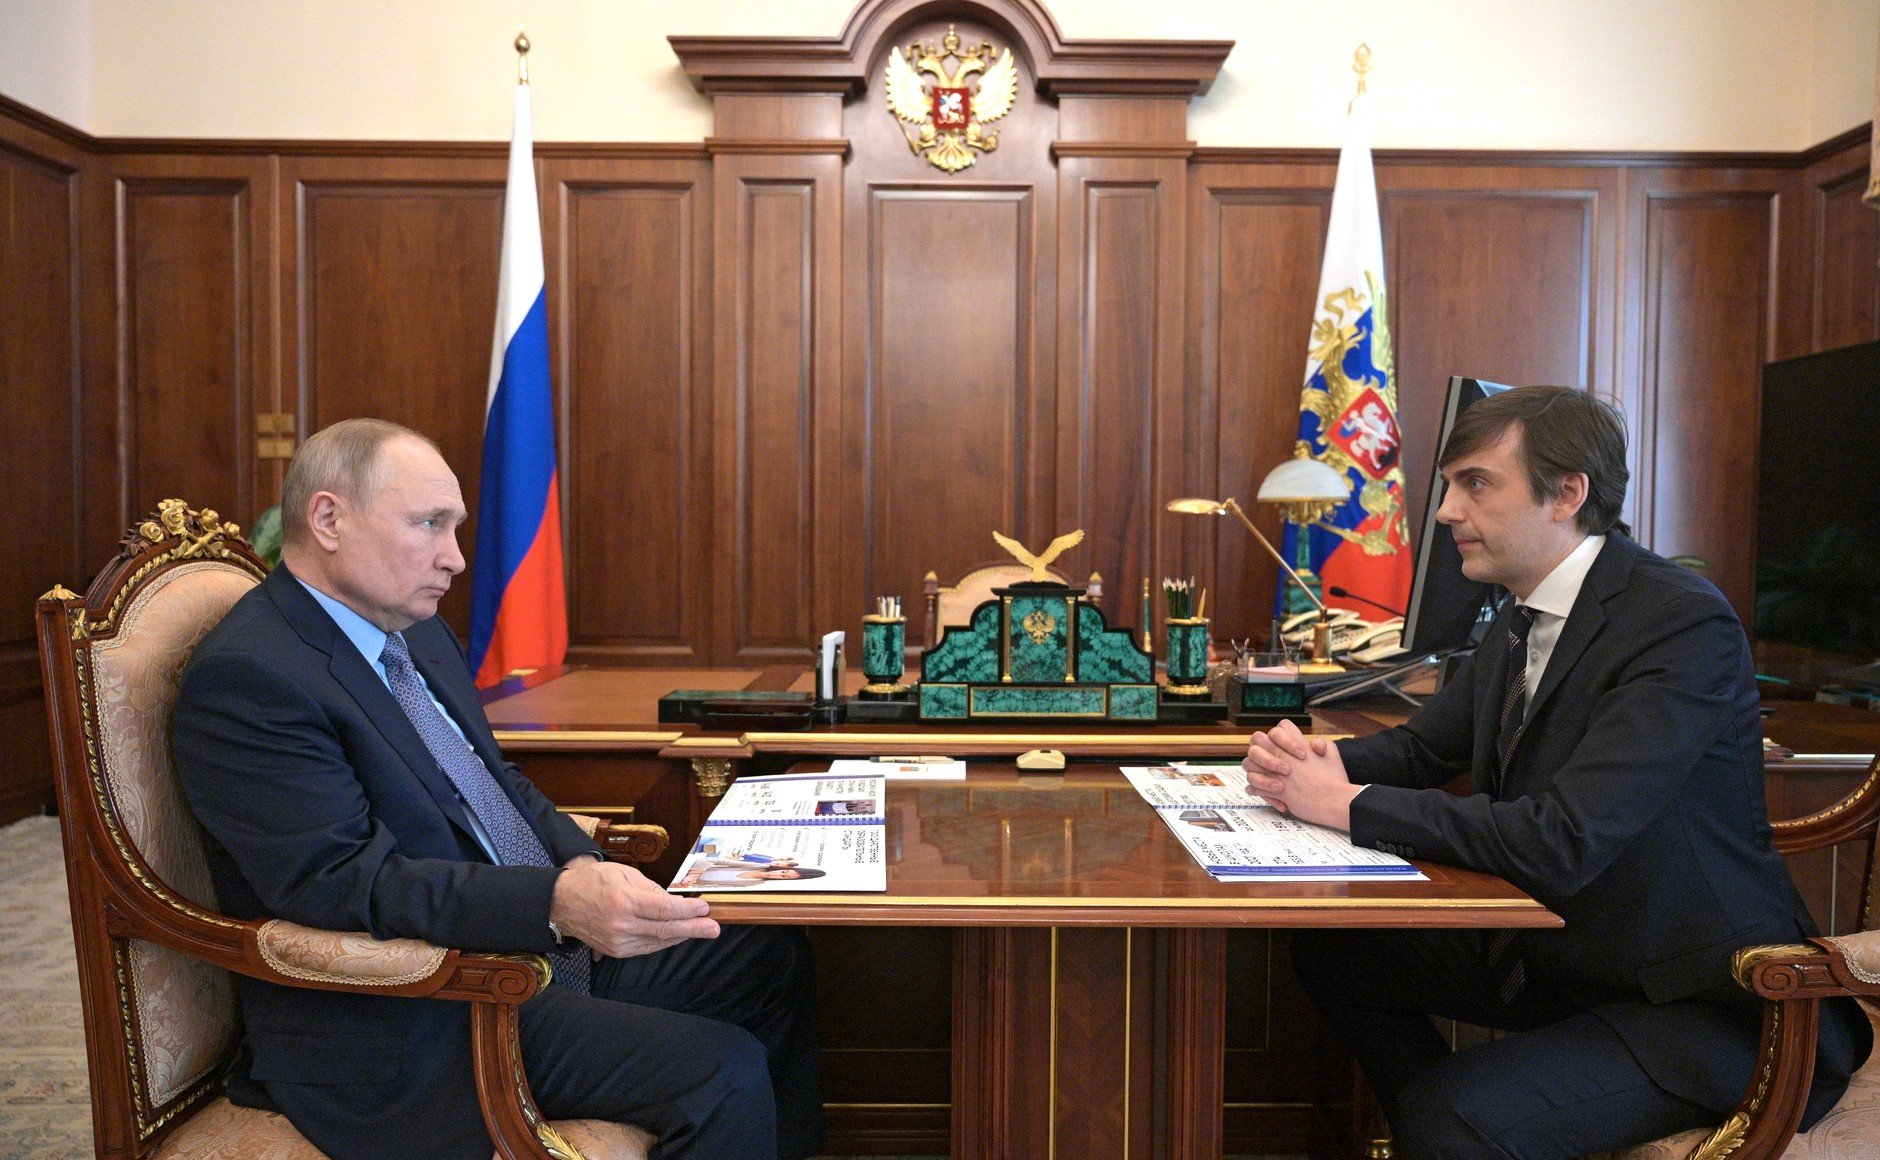 Сергей Кравцов доложил Владимиру Путину о ходе реализации ключевых задач в системе образования